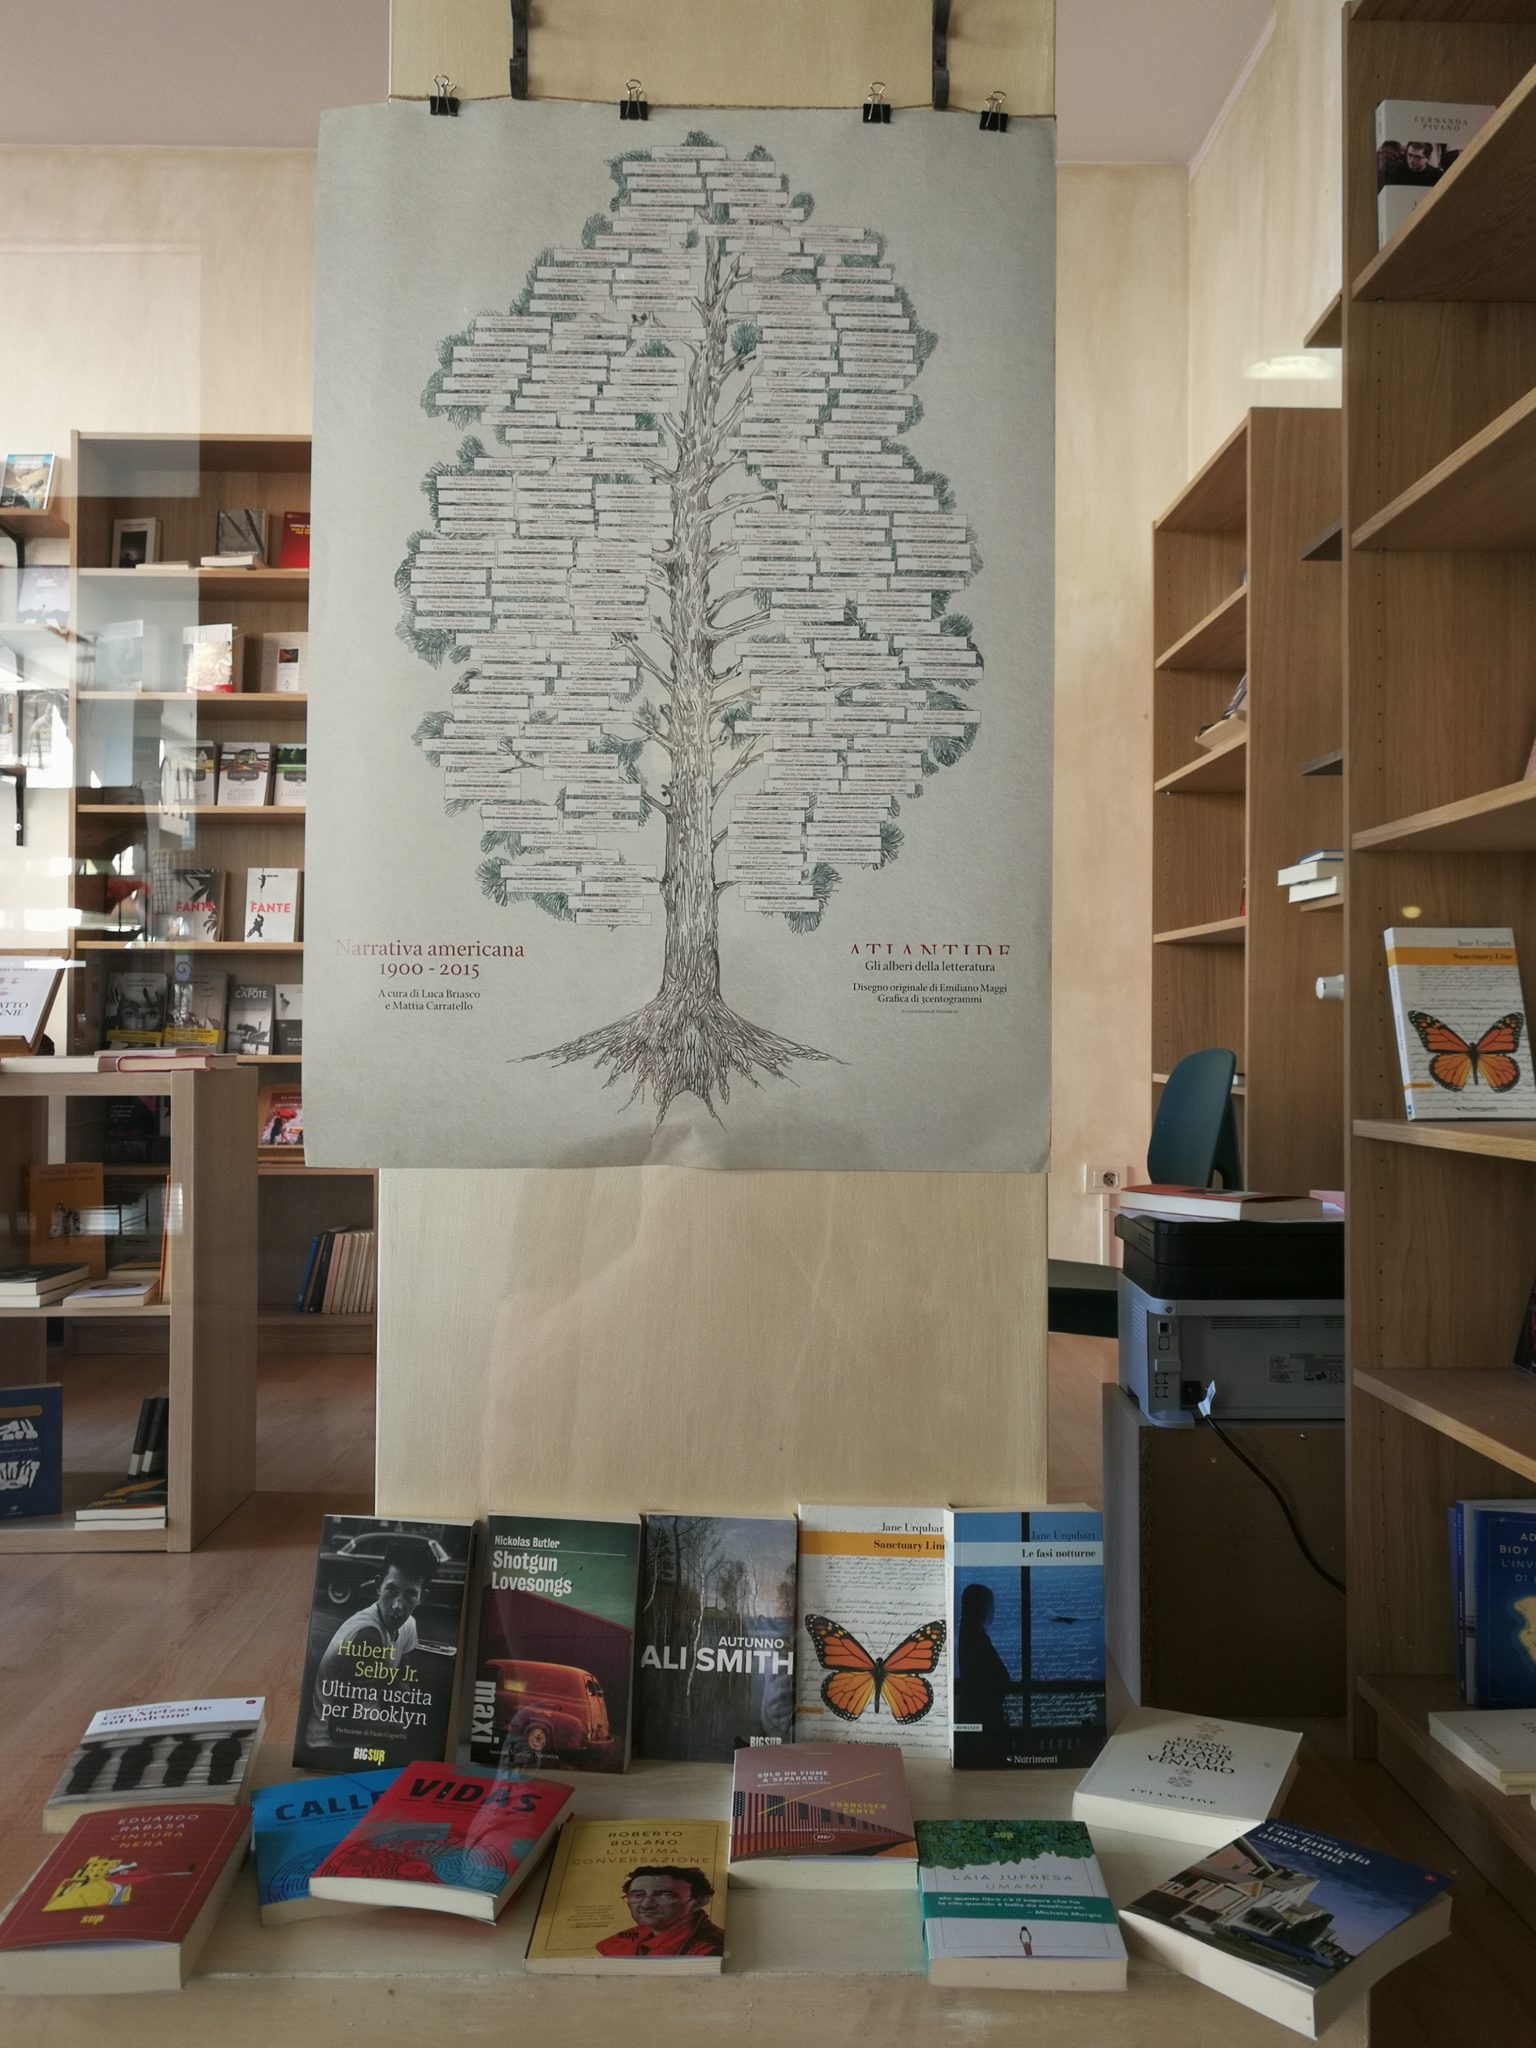 A Piacenza ha appena aperto una nuova libreria. Propone narrativa nordamericana e letteratura sudamericana: in pochi metri quadri, oltre 16.000 km di storie